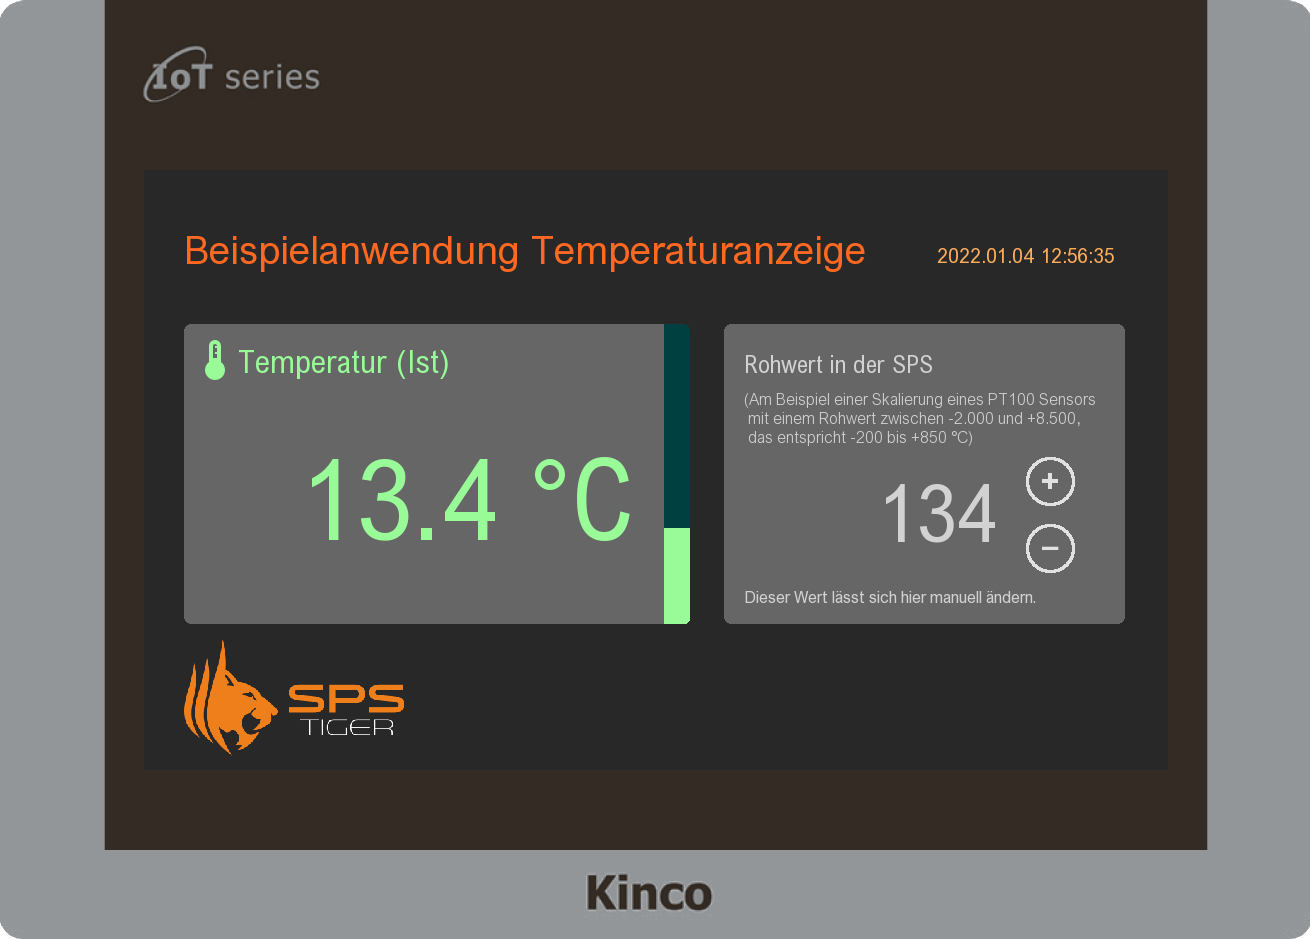 Das ist ein Beispiel für eine einfache Temperaturanzeige